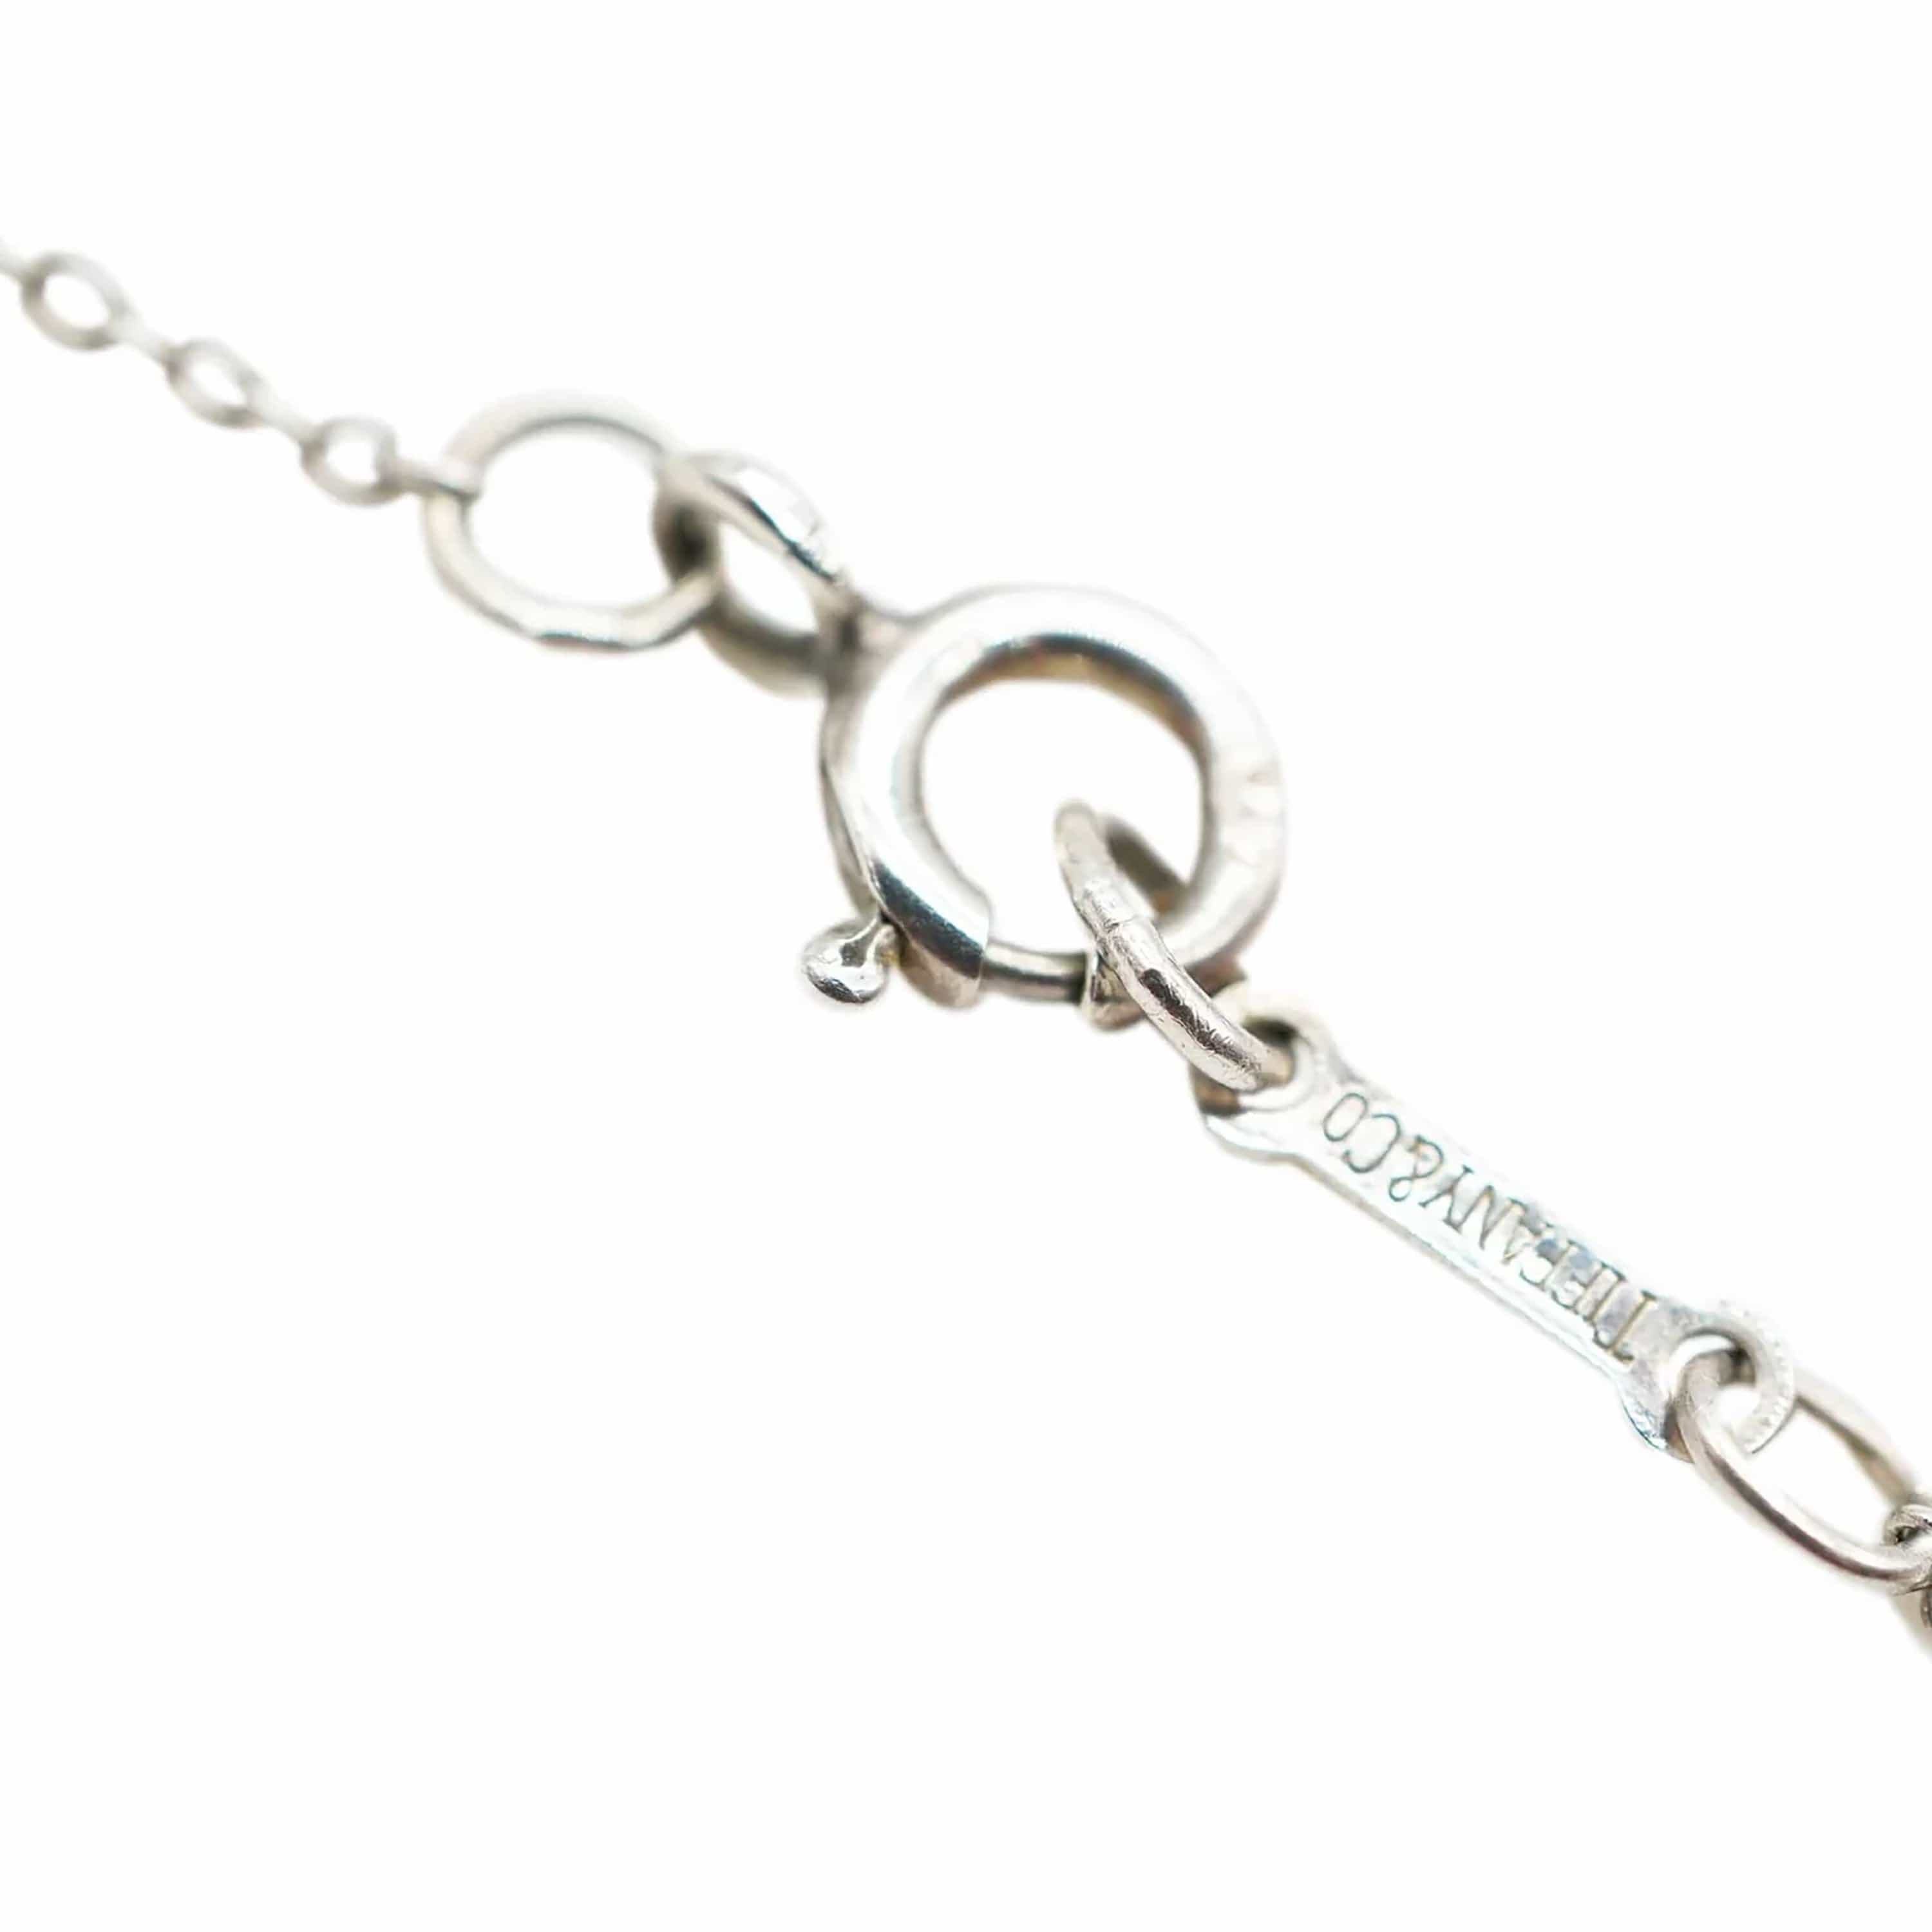 Tiffany & Co. Tiffany & Co. Elsa Peretti Small Full Heart Pendant in Sterling Silver